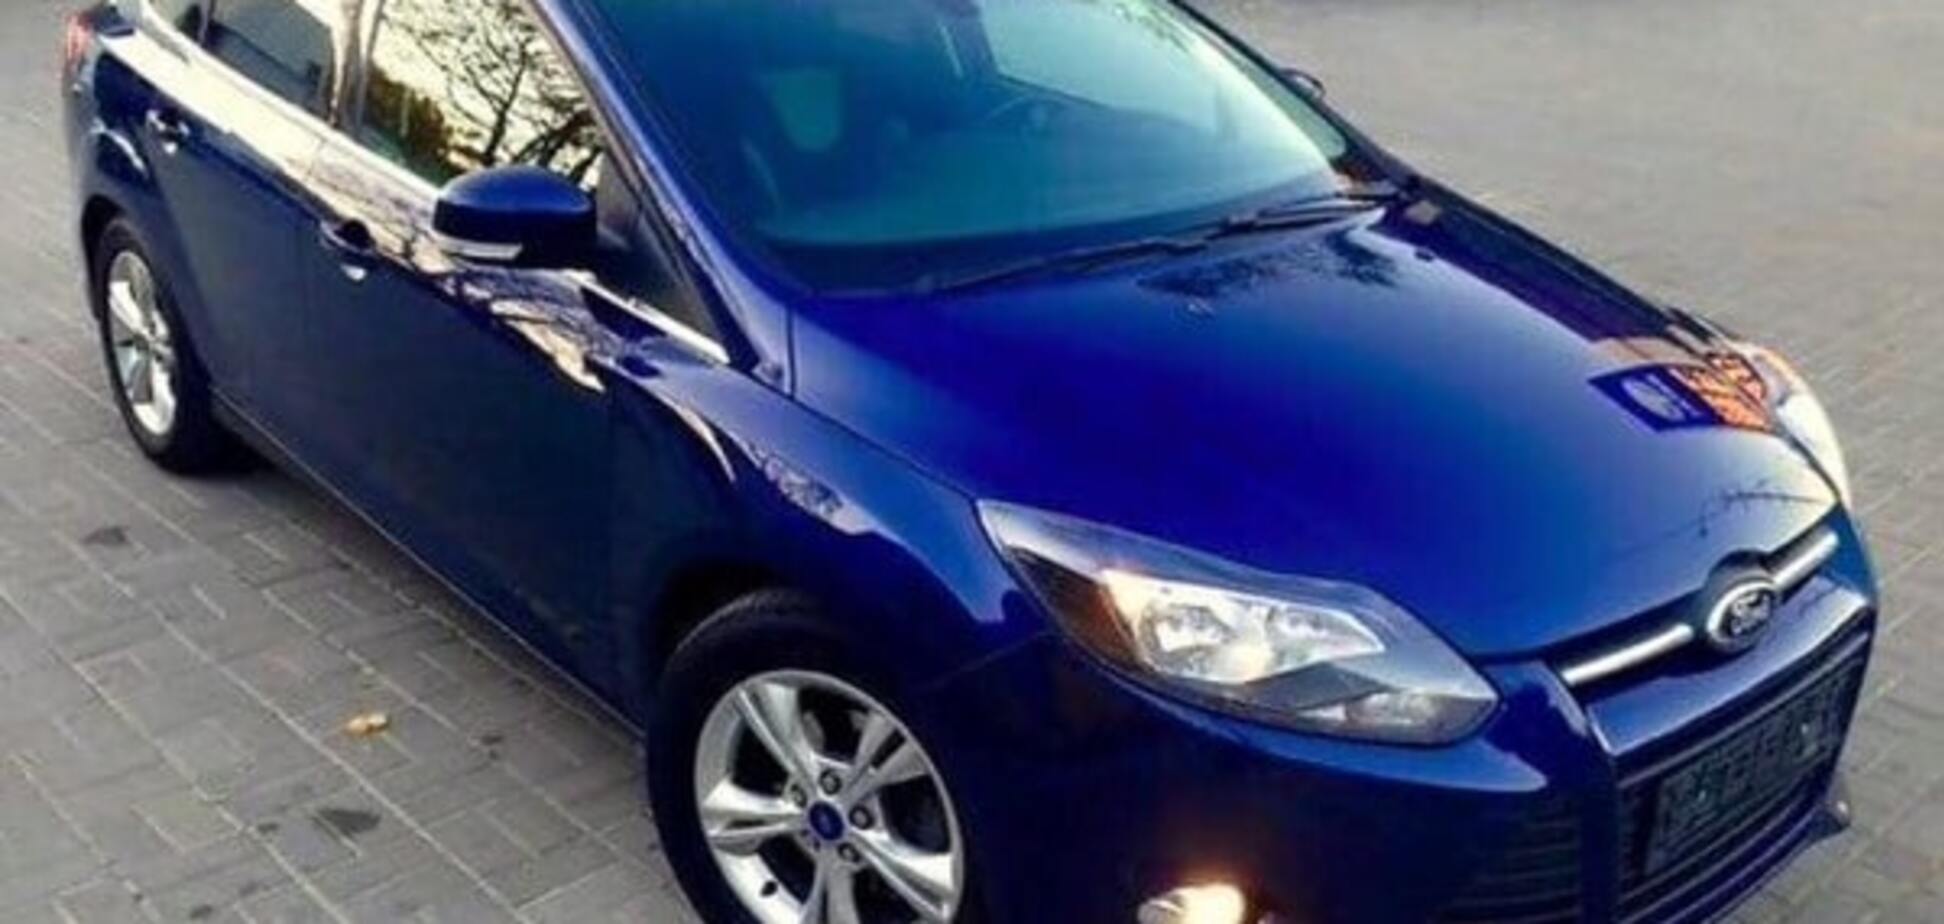 У киянки викрали темно-синій Ford Focus: вона просить допомоги у пошуку